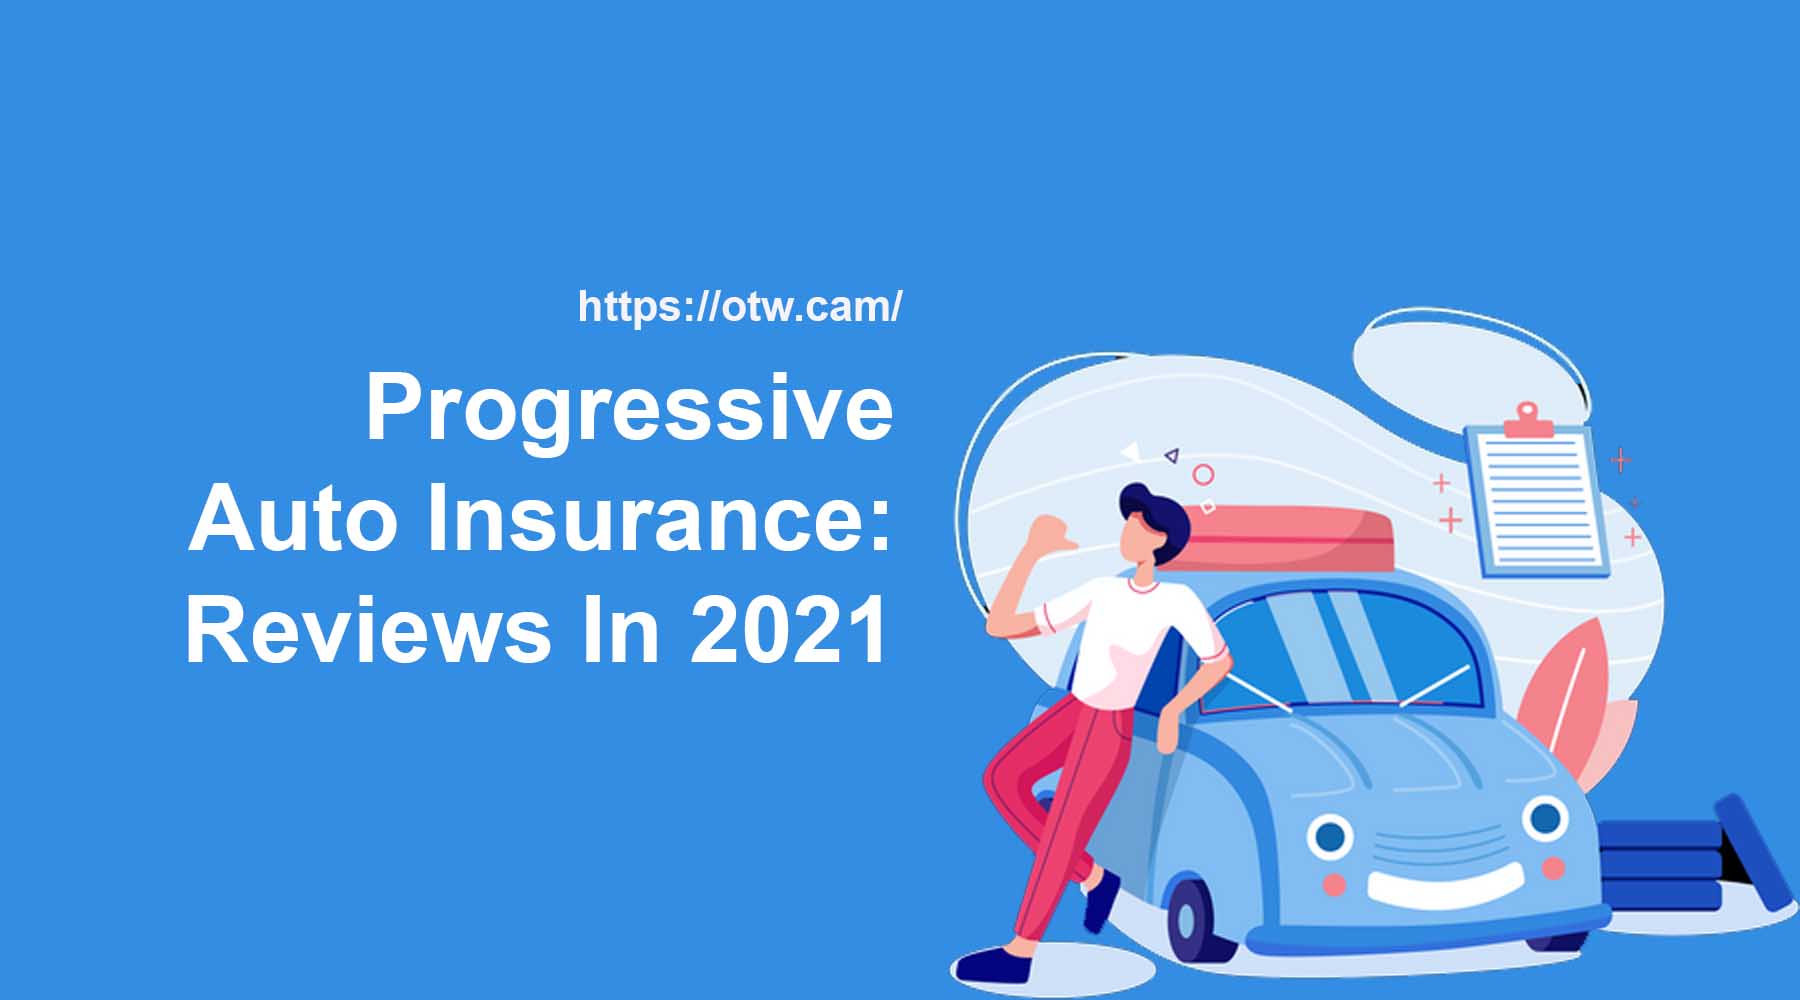 Progressive Auto Insurance: Reviews In 2021